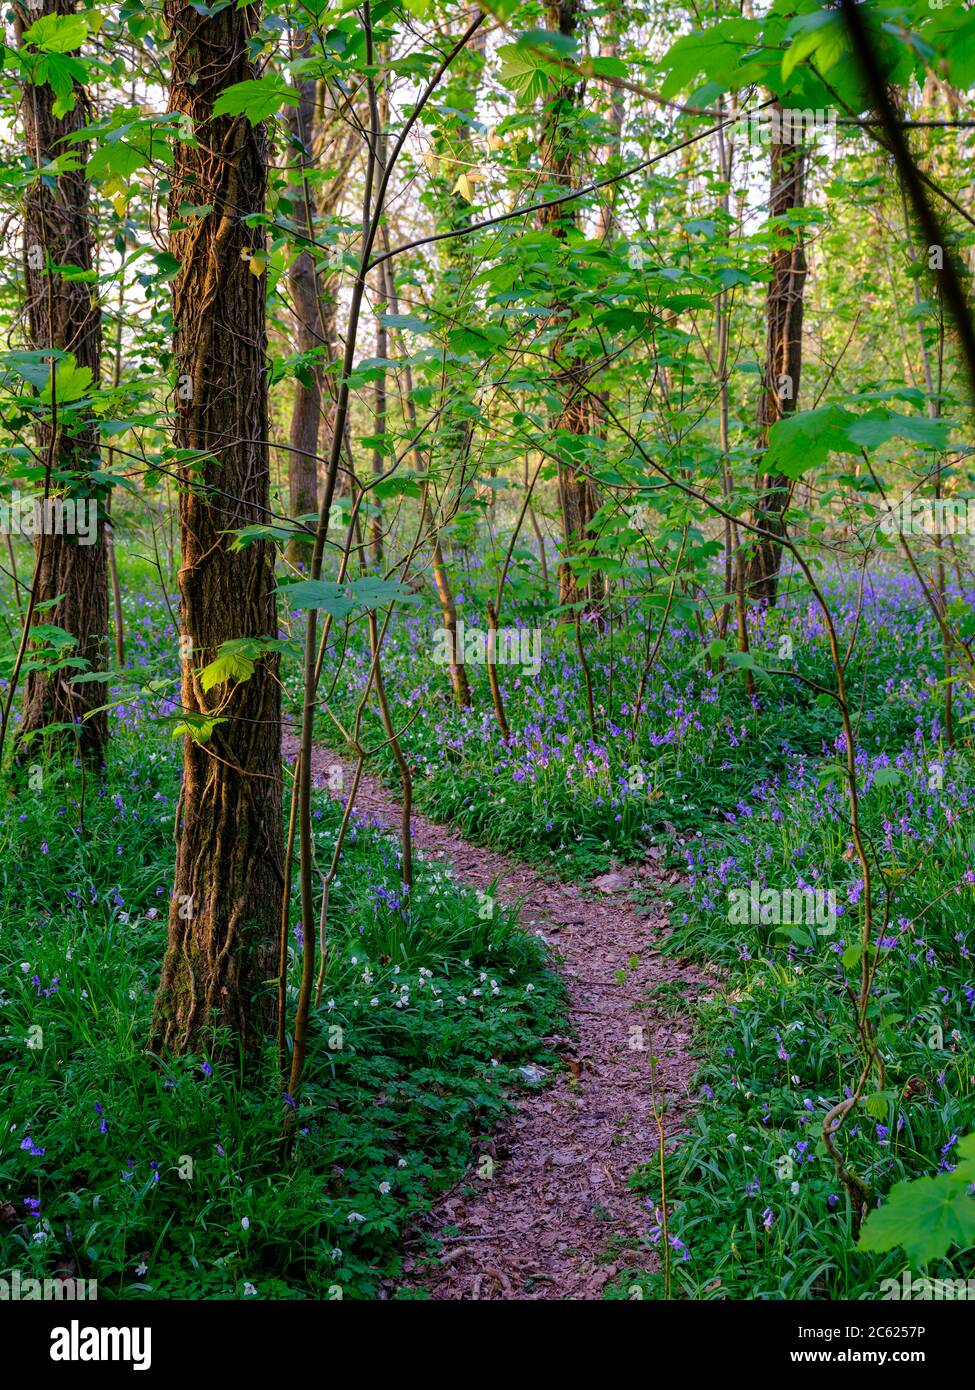 Wickham, UK - April 11, 2020:  Bluebells in the wood, near Wickham, Hampshie, UK Stock Photo